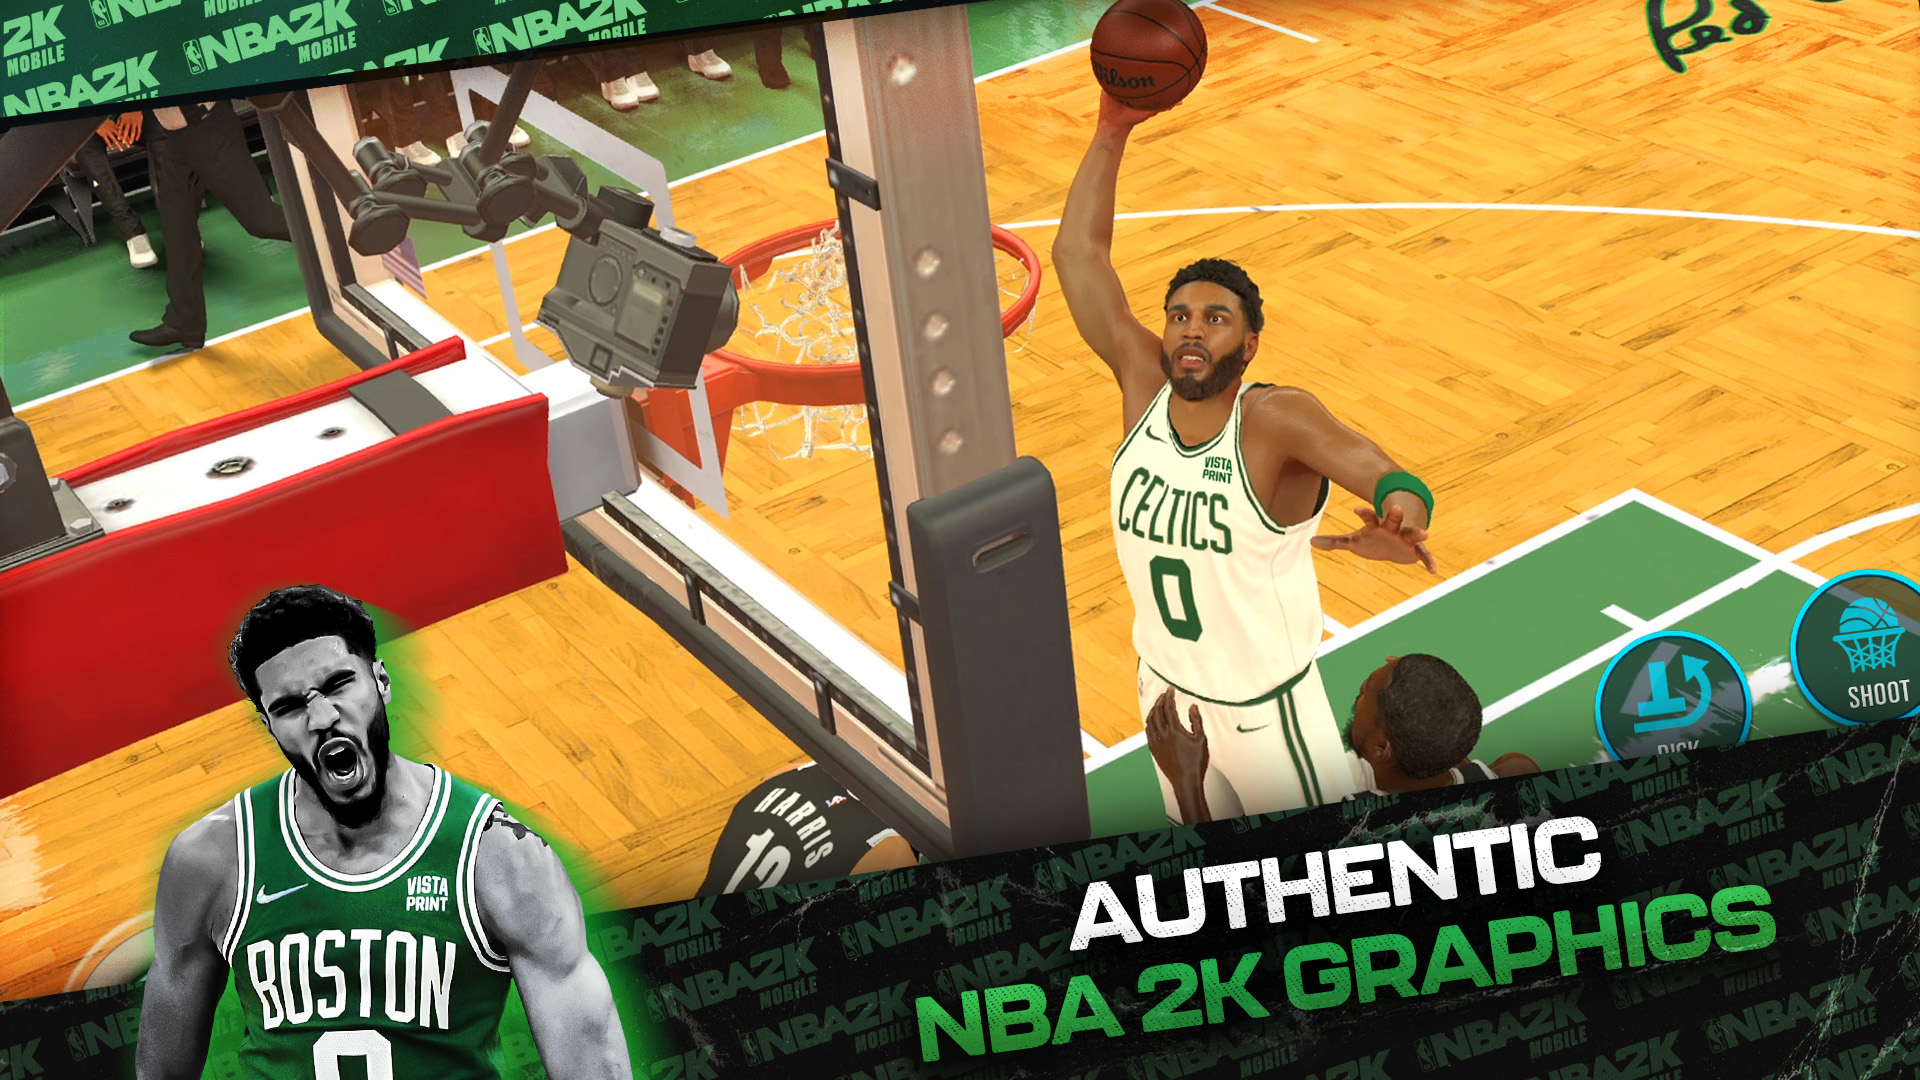 Authentic NBA 2K Graphics